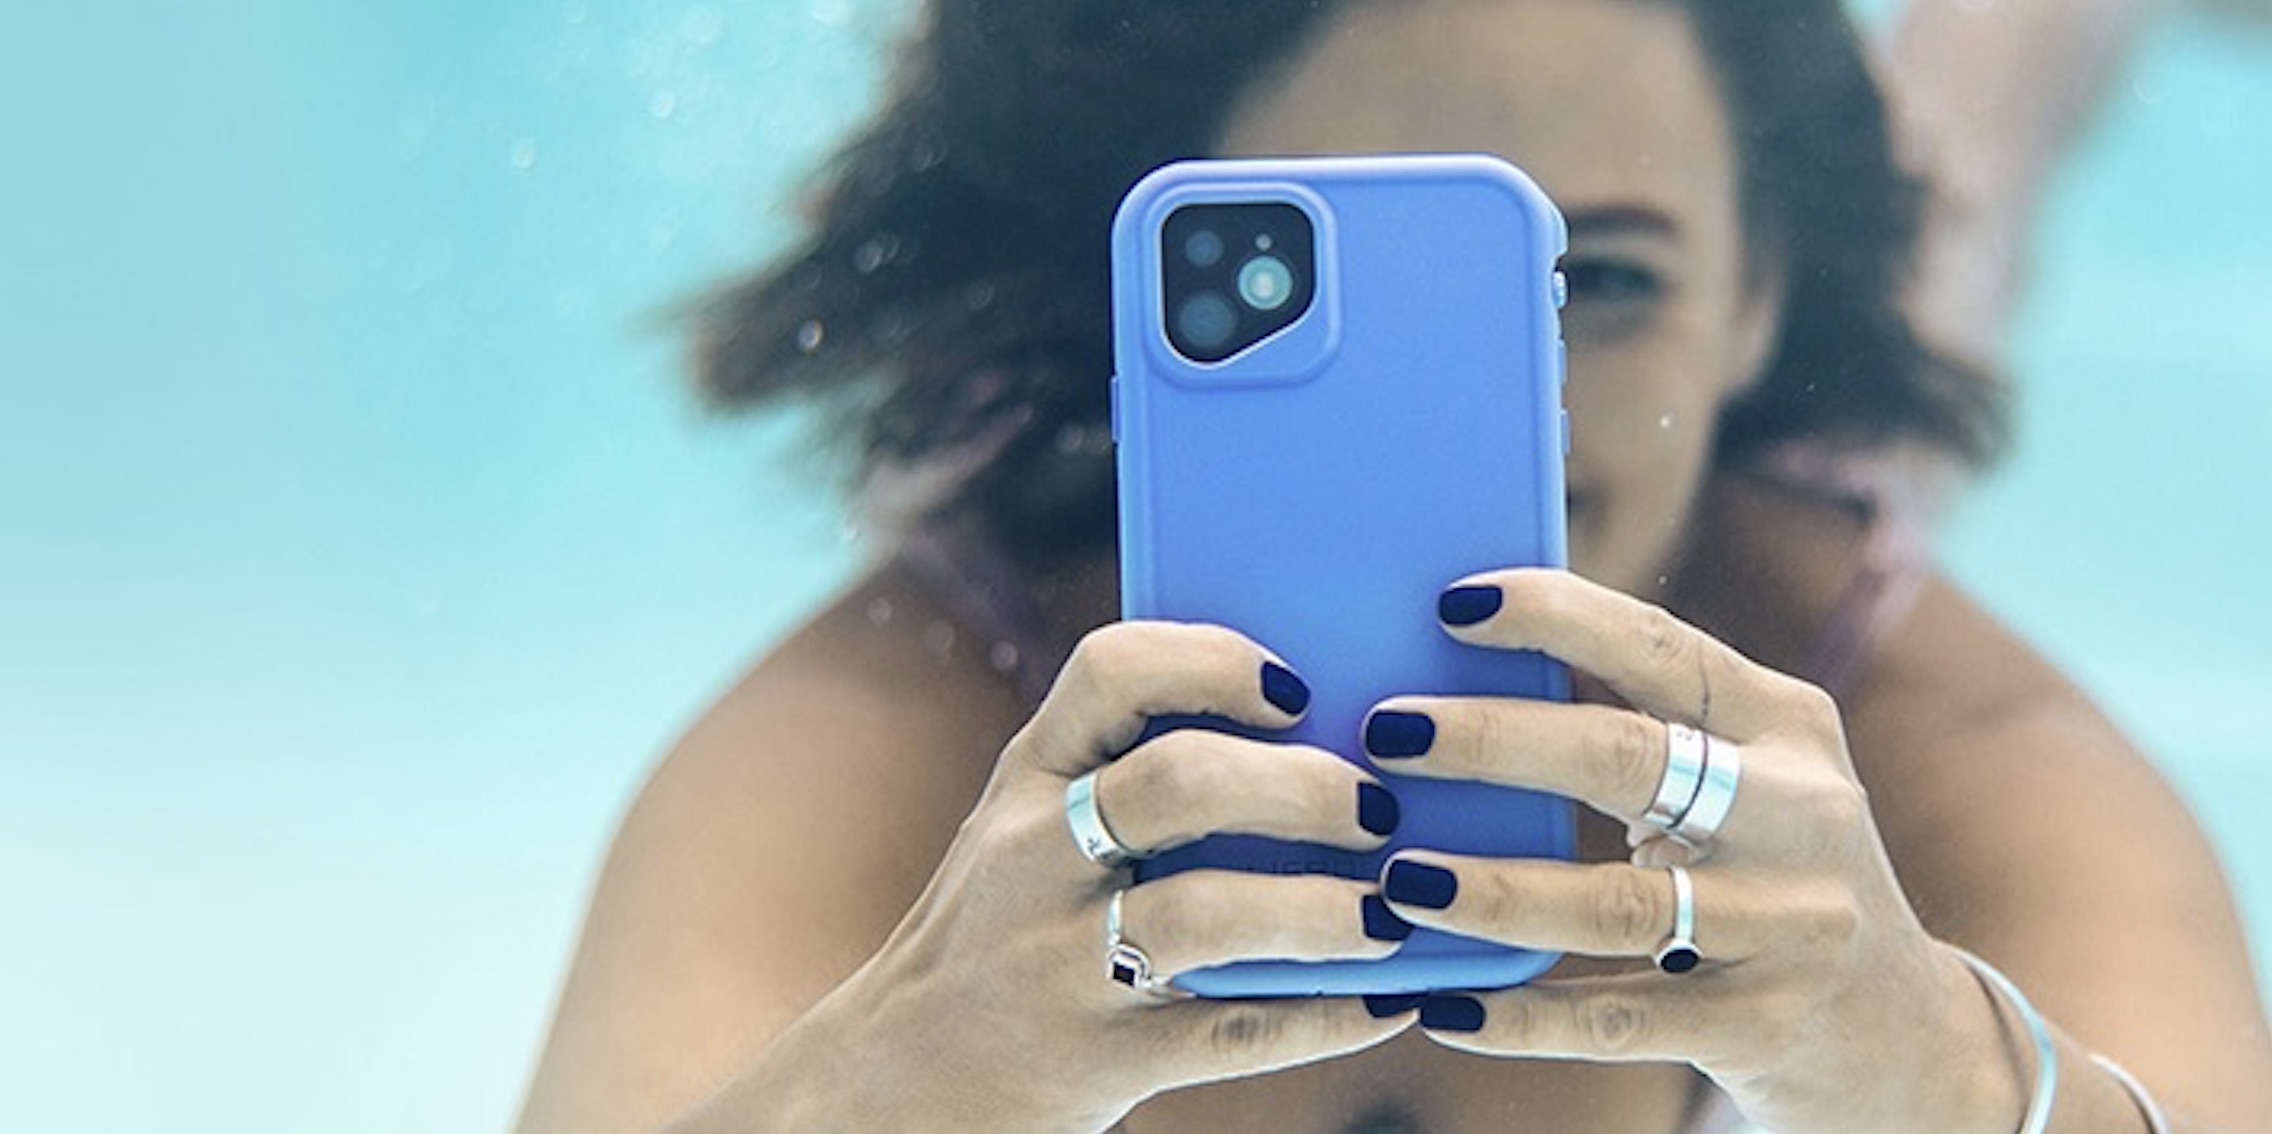 LifeProof debuts iPhone 11 waterproof cases w/ slimmer design - 9to5Mac